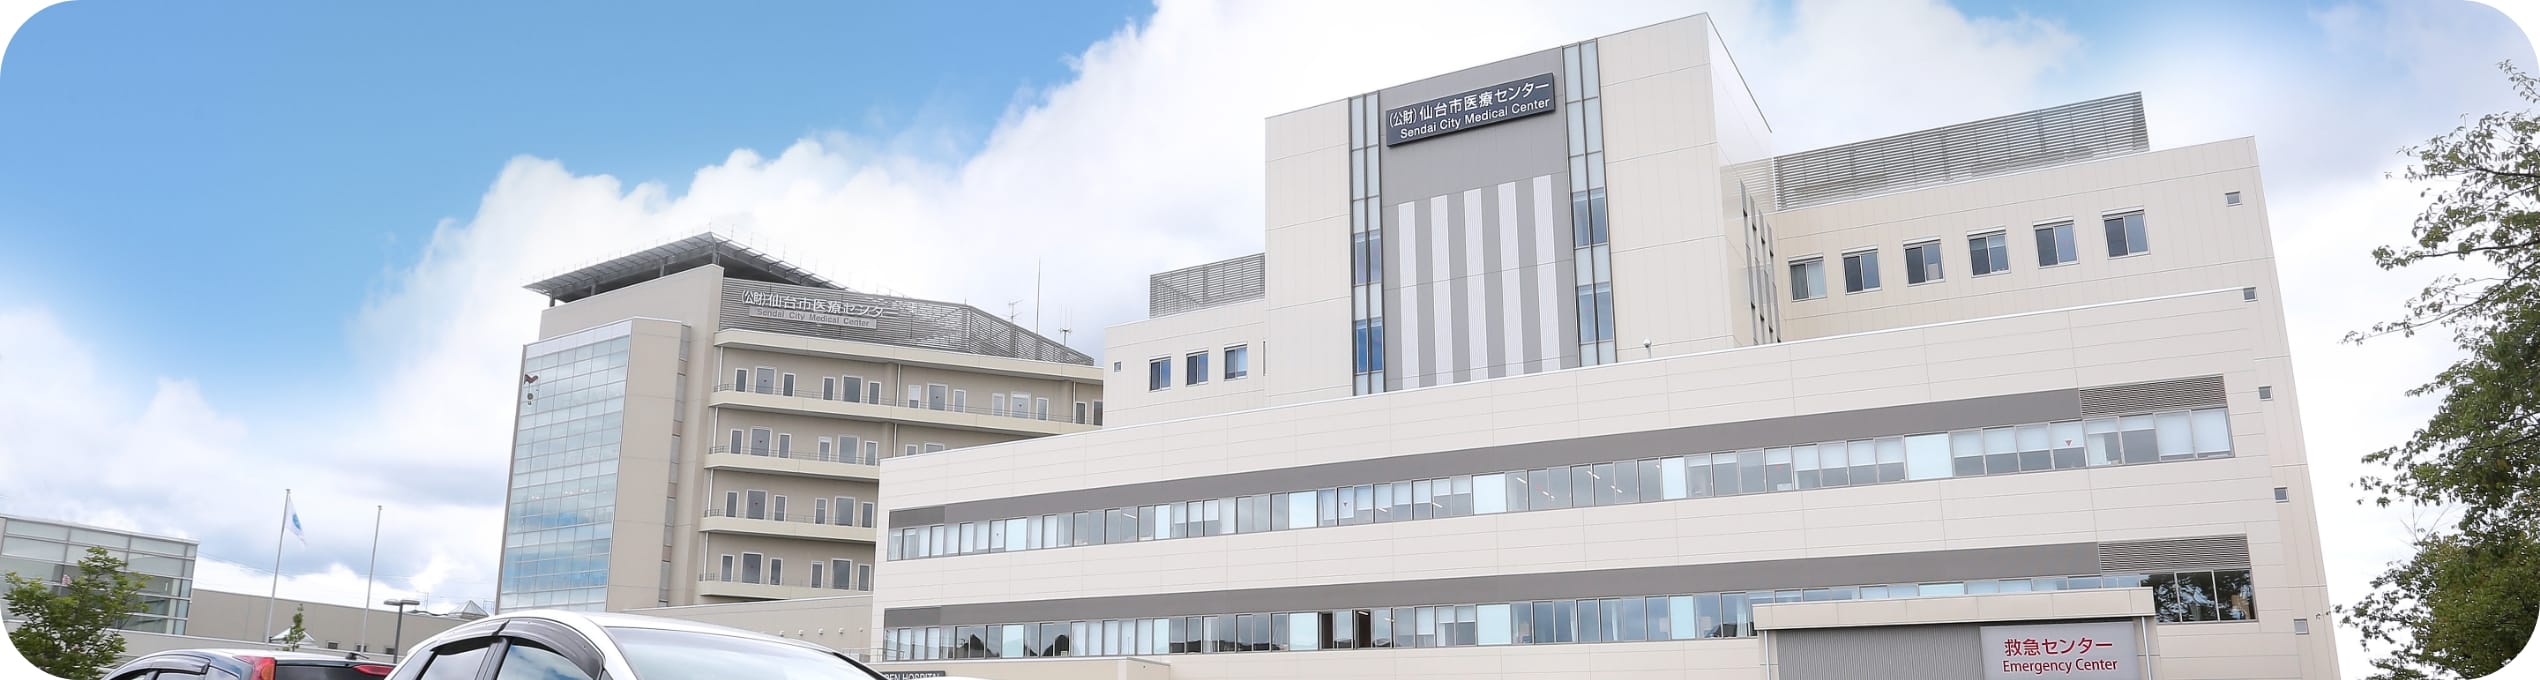 仙台オープン病院ホームページリニューアル業務公募型プロポーザルについて